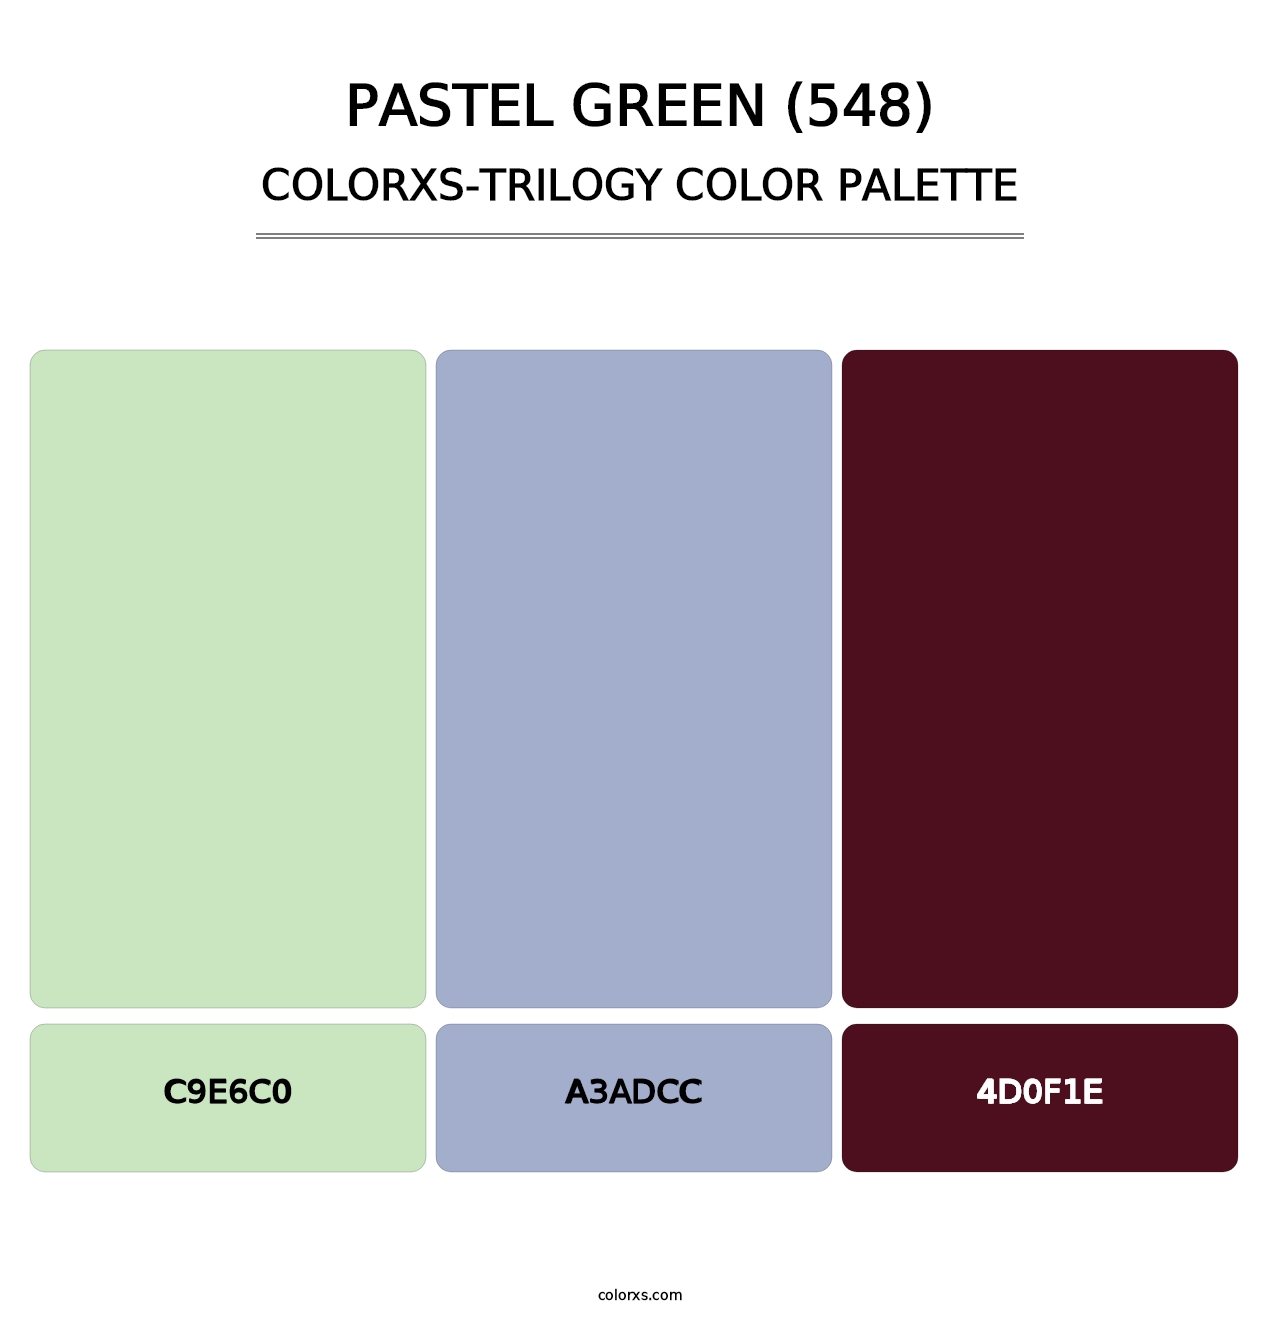 Pastel Green (548) - Colorxs Trilogy Palette